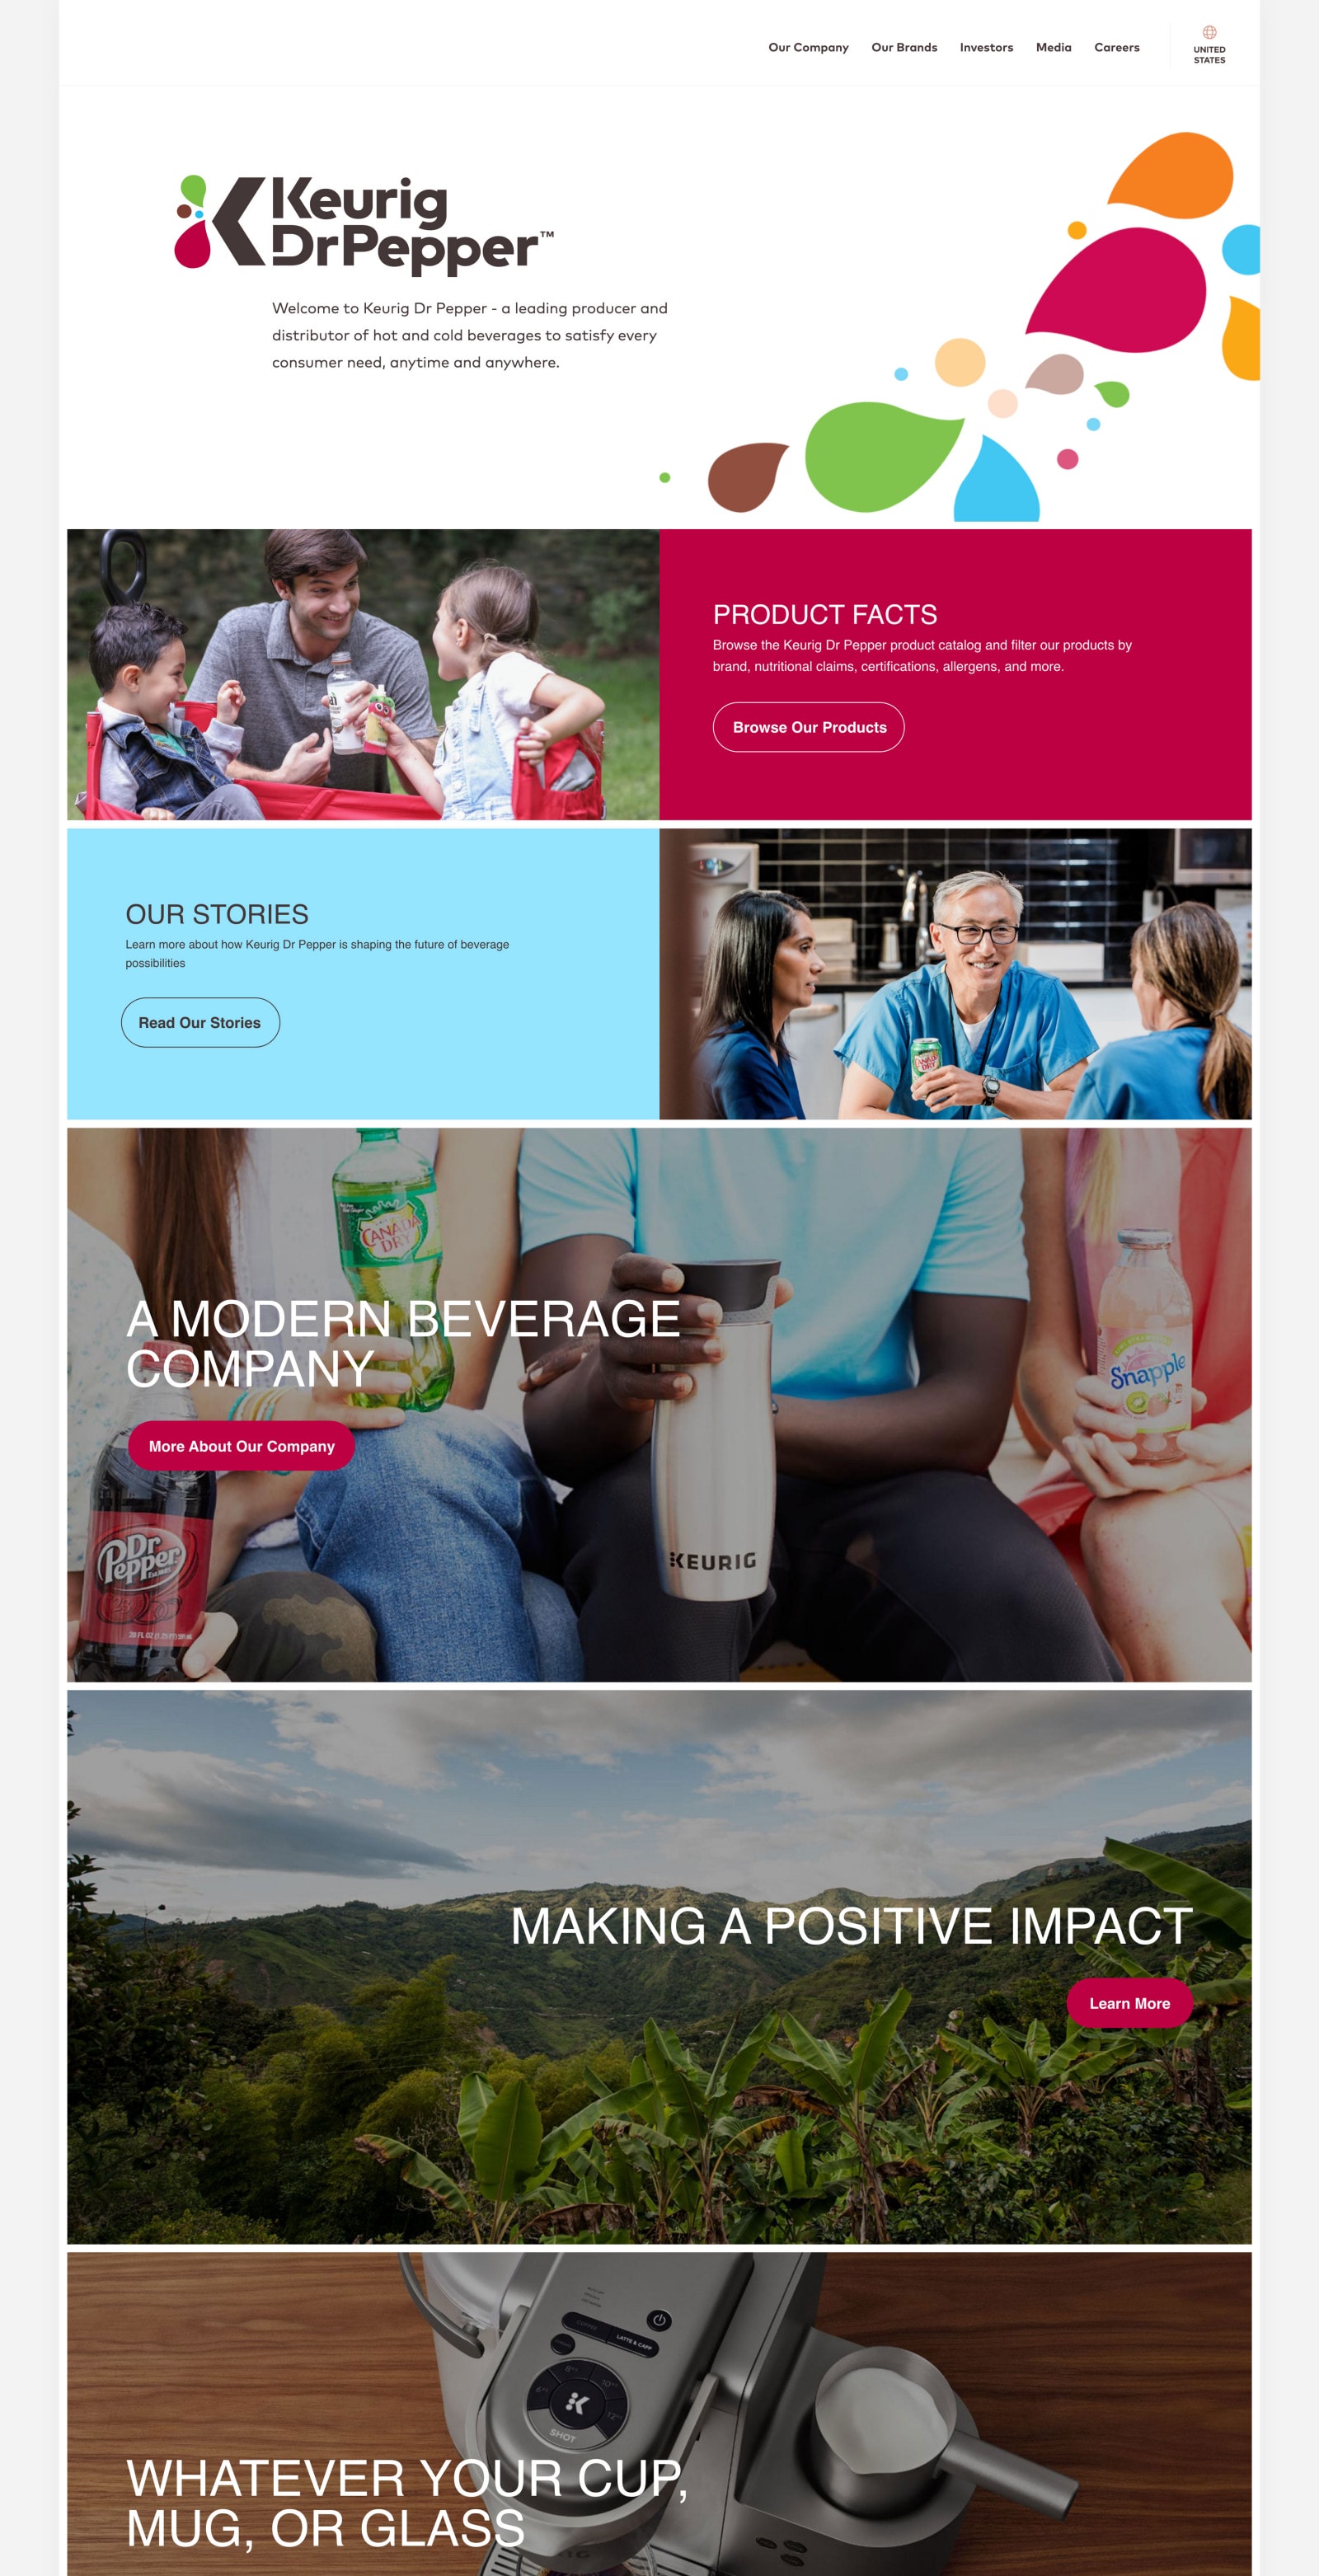 Keurig Dr Pepper corporate website homepage